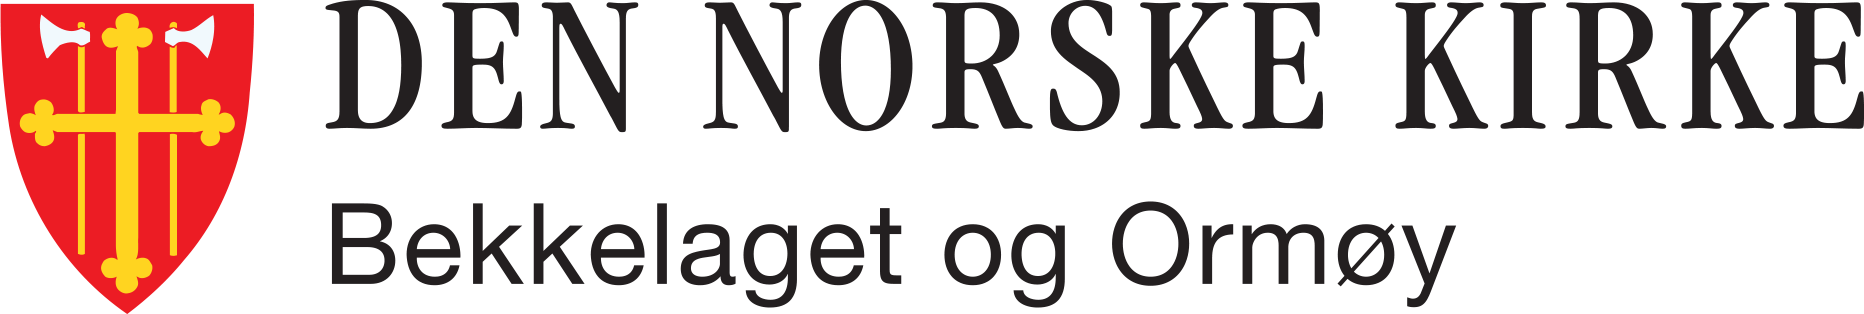 Bekkelaget og Ormøy menighet logo